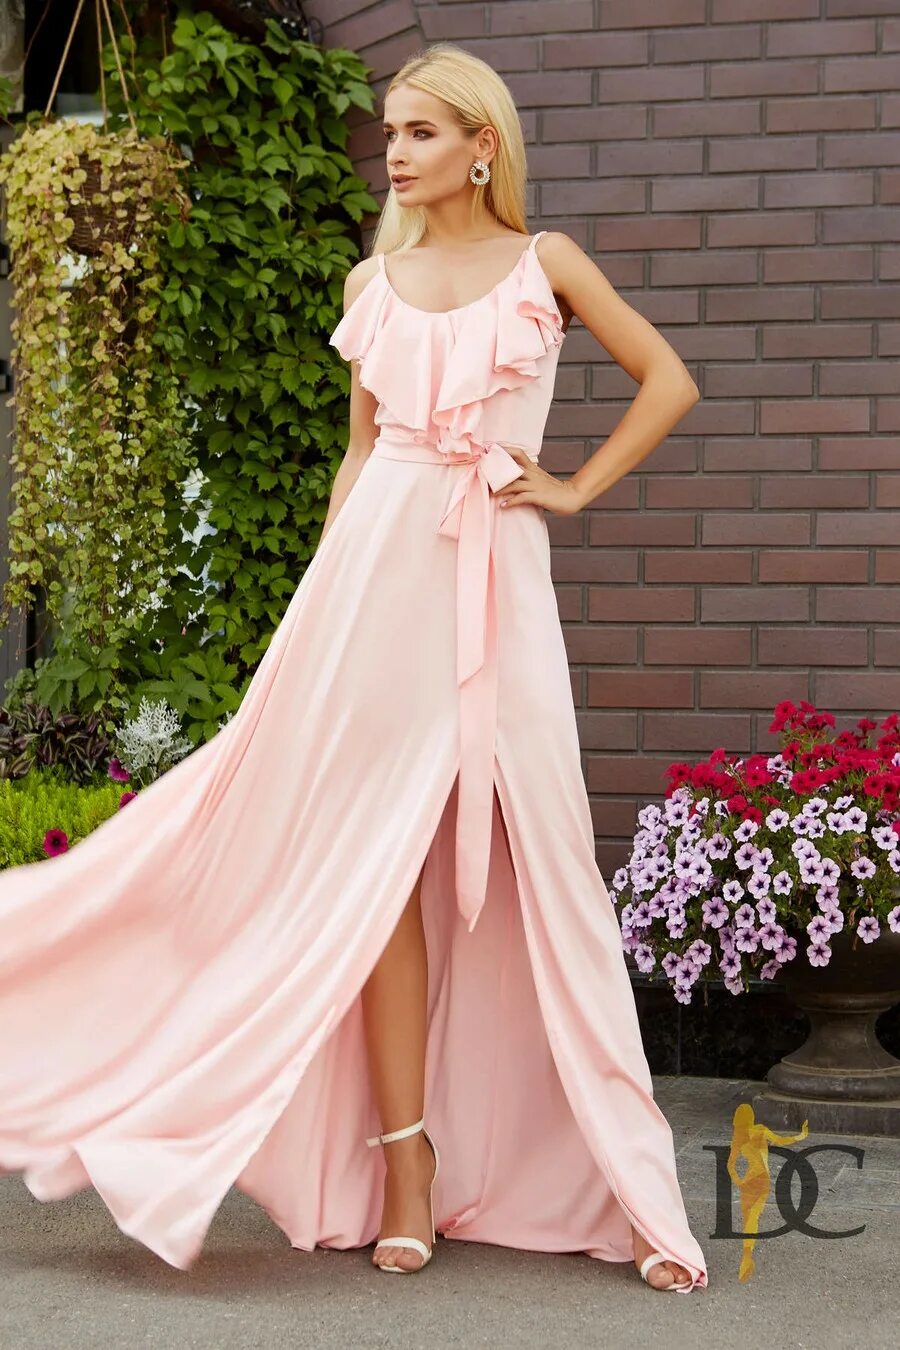 Нежное платье. Нежное платье в пол. Нежно розовое платье длинное. Нежно розовое платье в пол. Длинное нежное платье